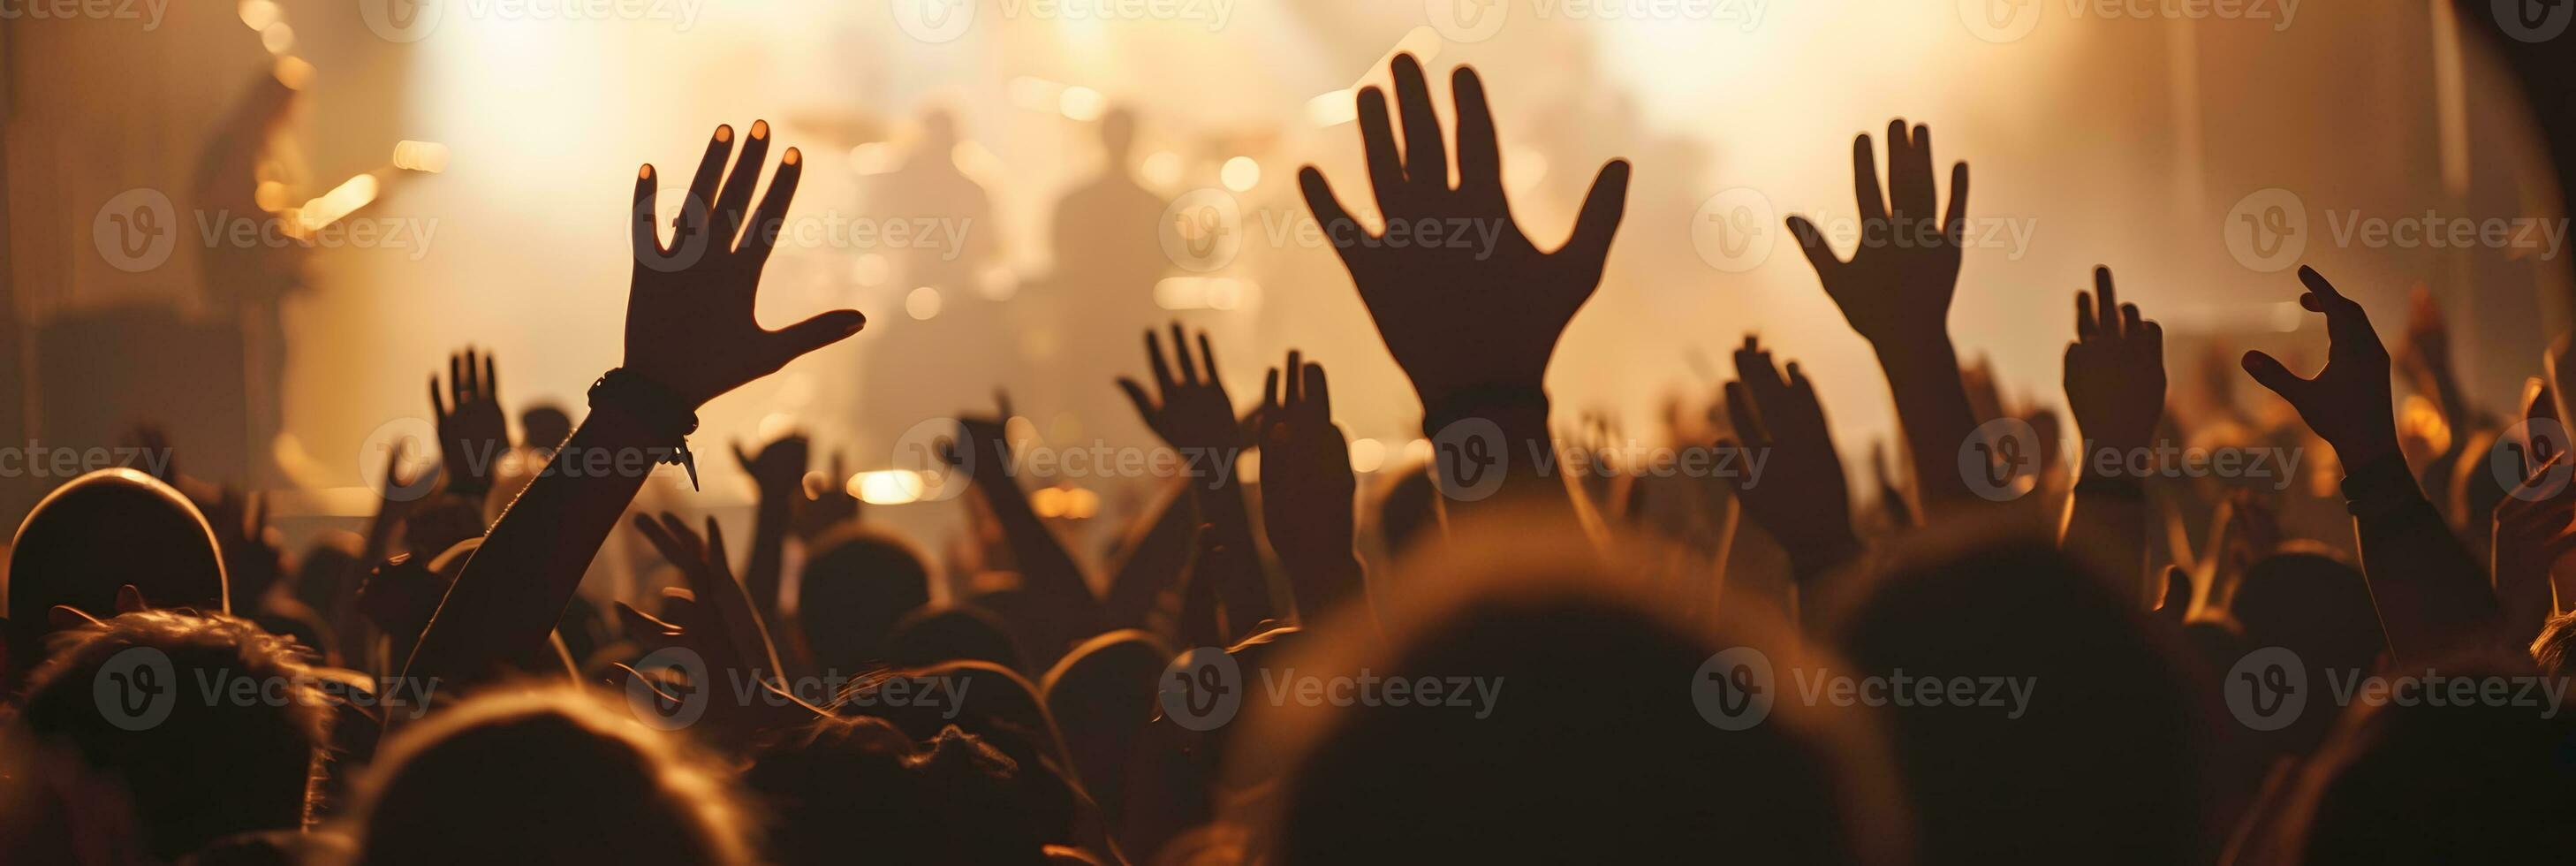 folkmassan glädjande på en musik festival och höjning händer till de skede foto